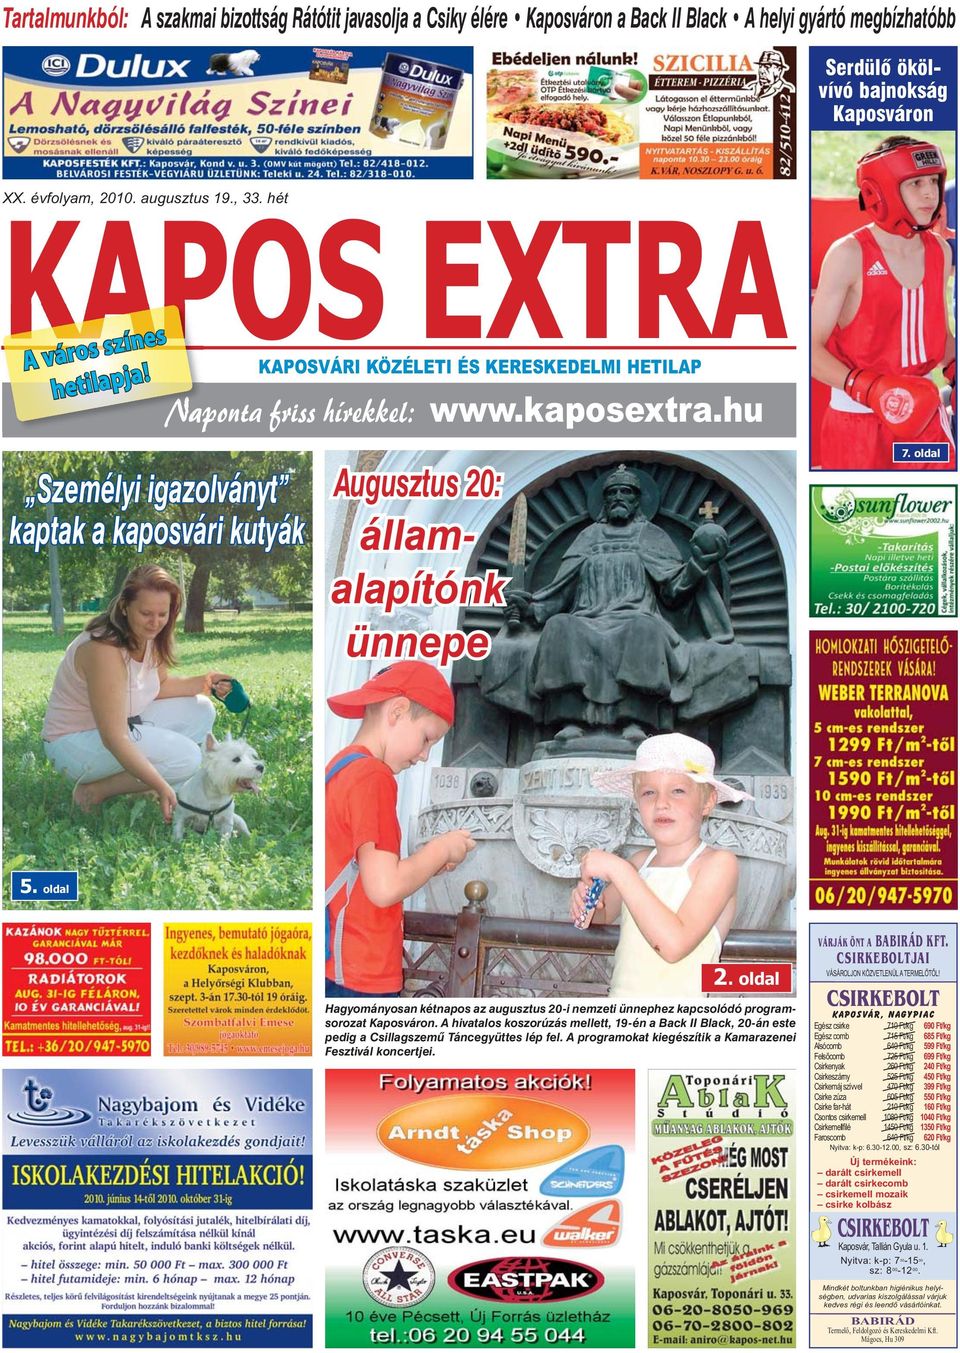 oldal Hagyományosan kétnapos az augusztus 20-i nemzeti ünnephez kapcsolódó programsorozat Kaposváron.